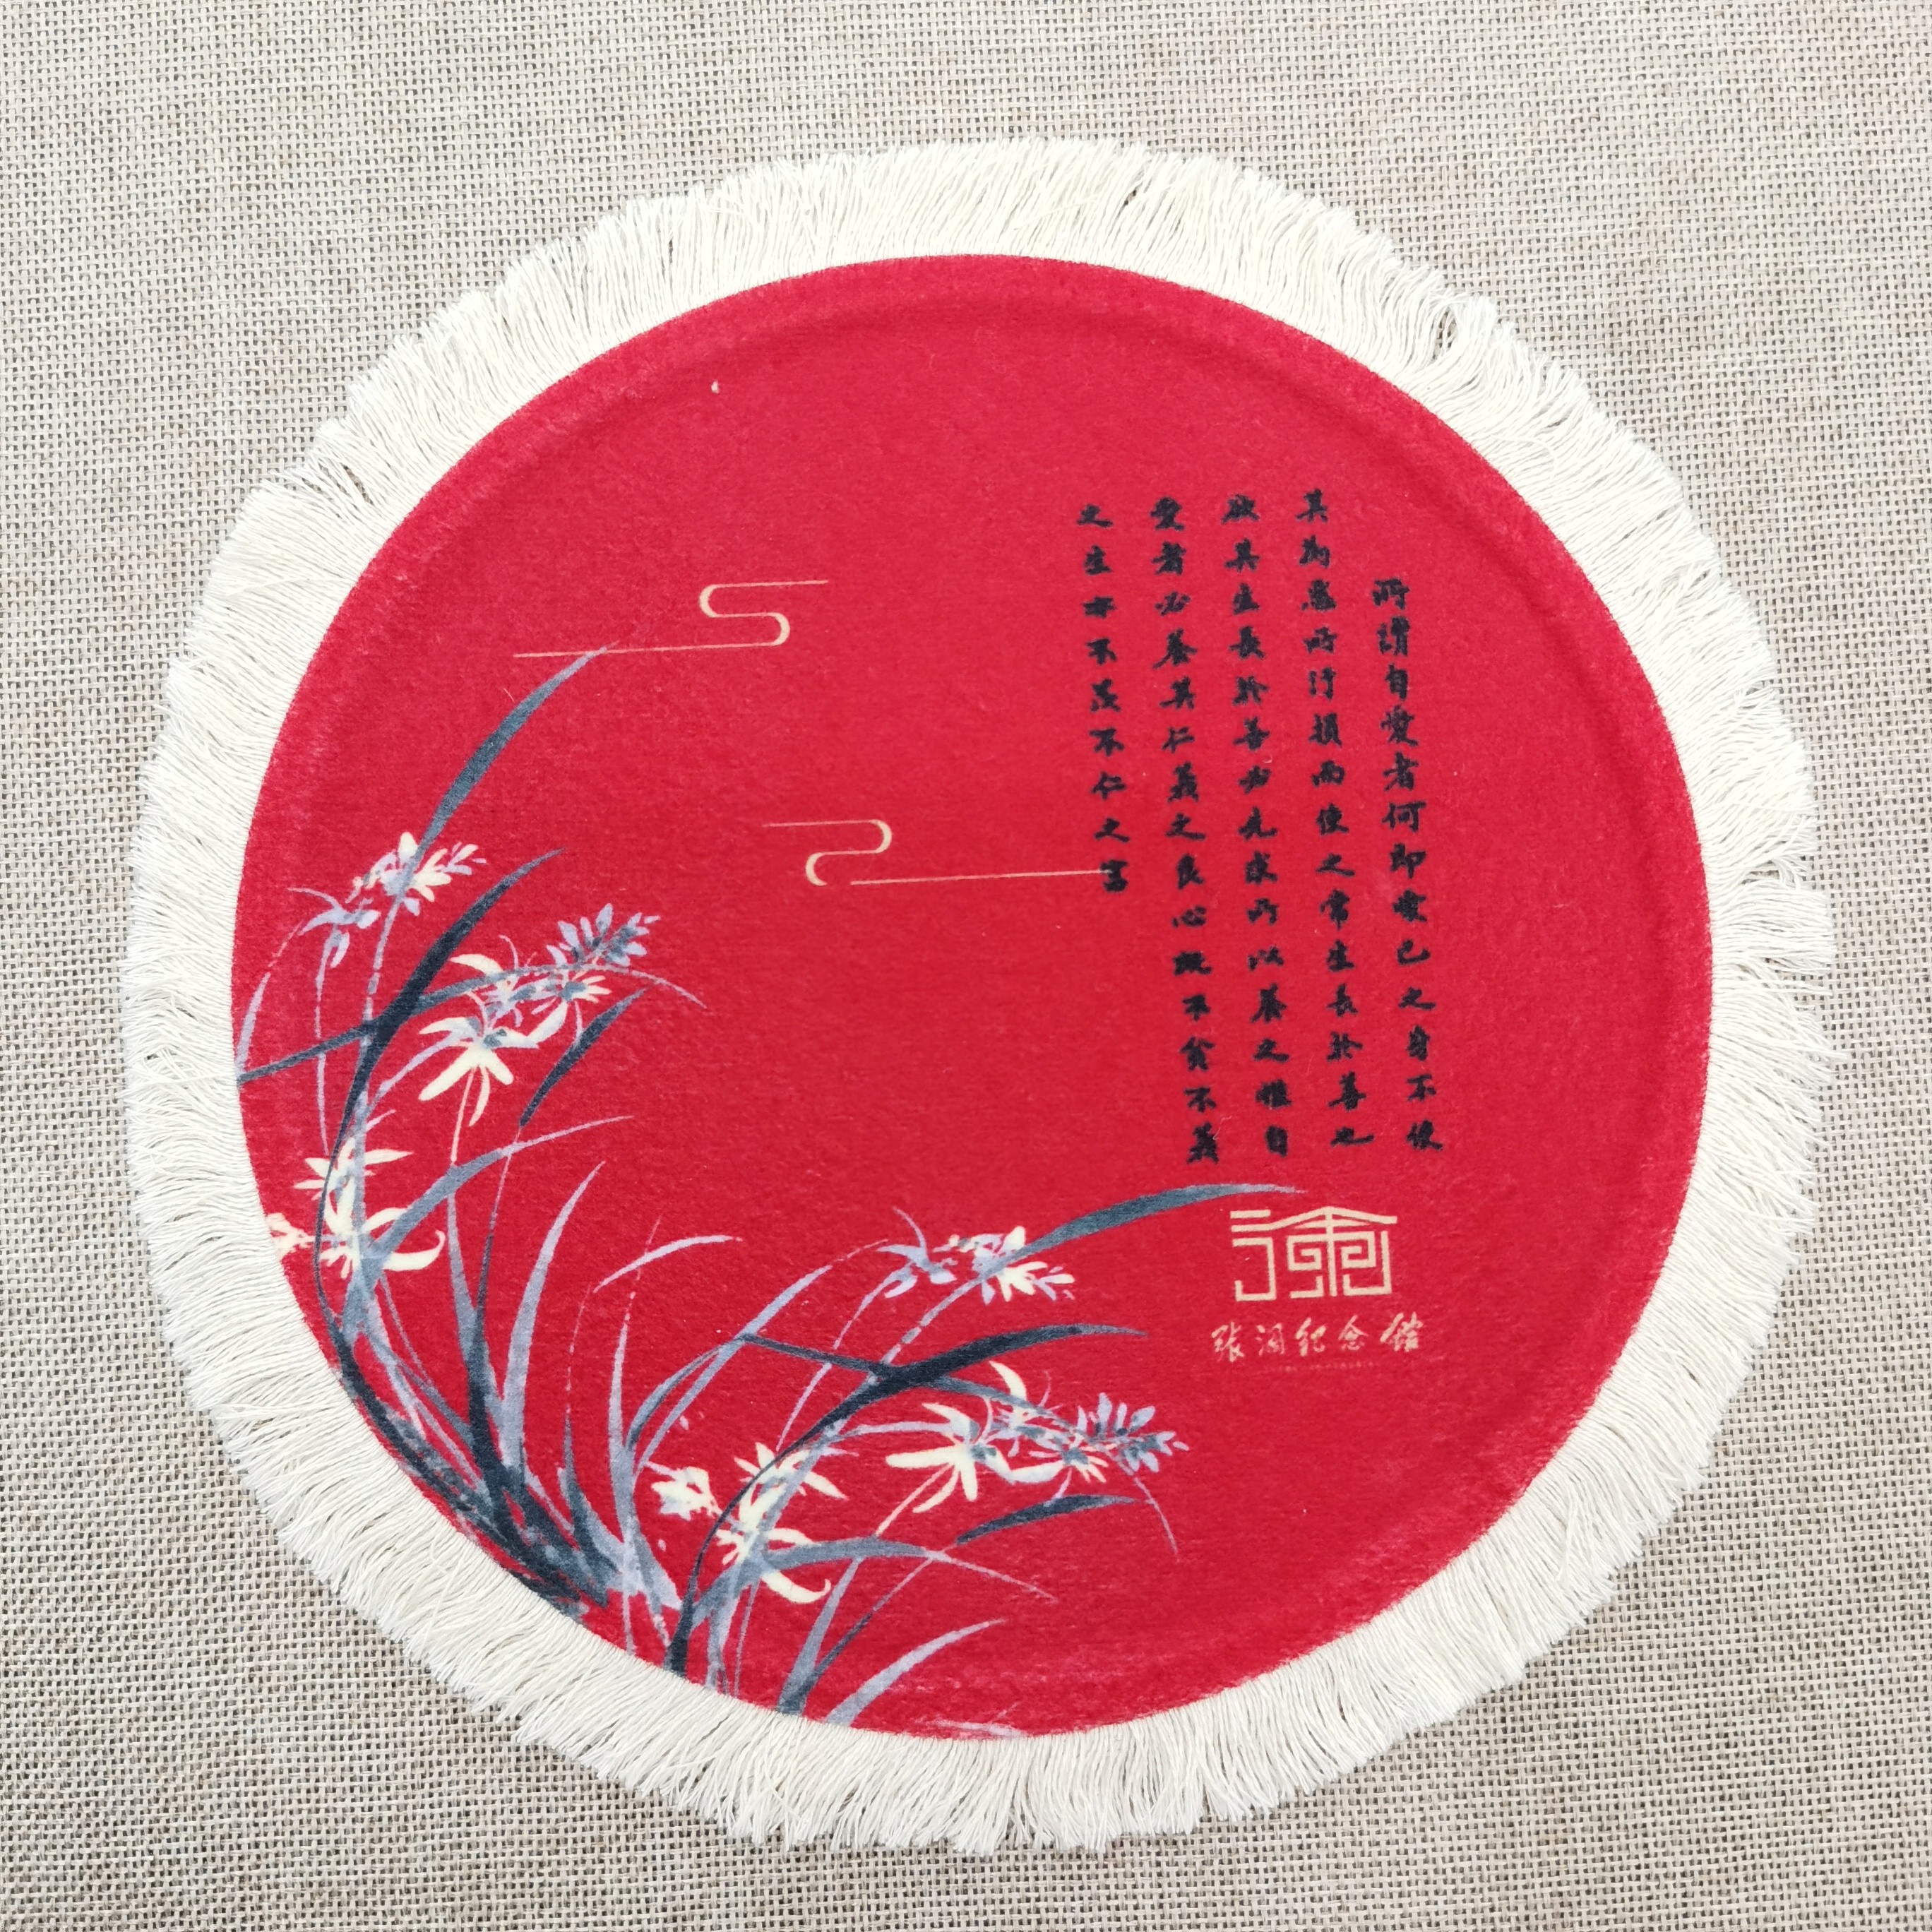 厂家直销创意新品波斯鼠标垫 地毯鼠标垫 中国风鼠标垫详情图2